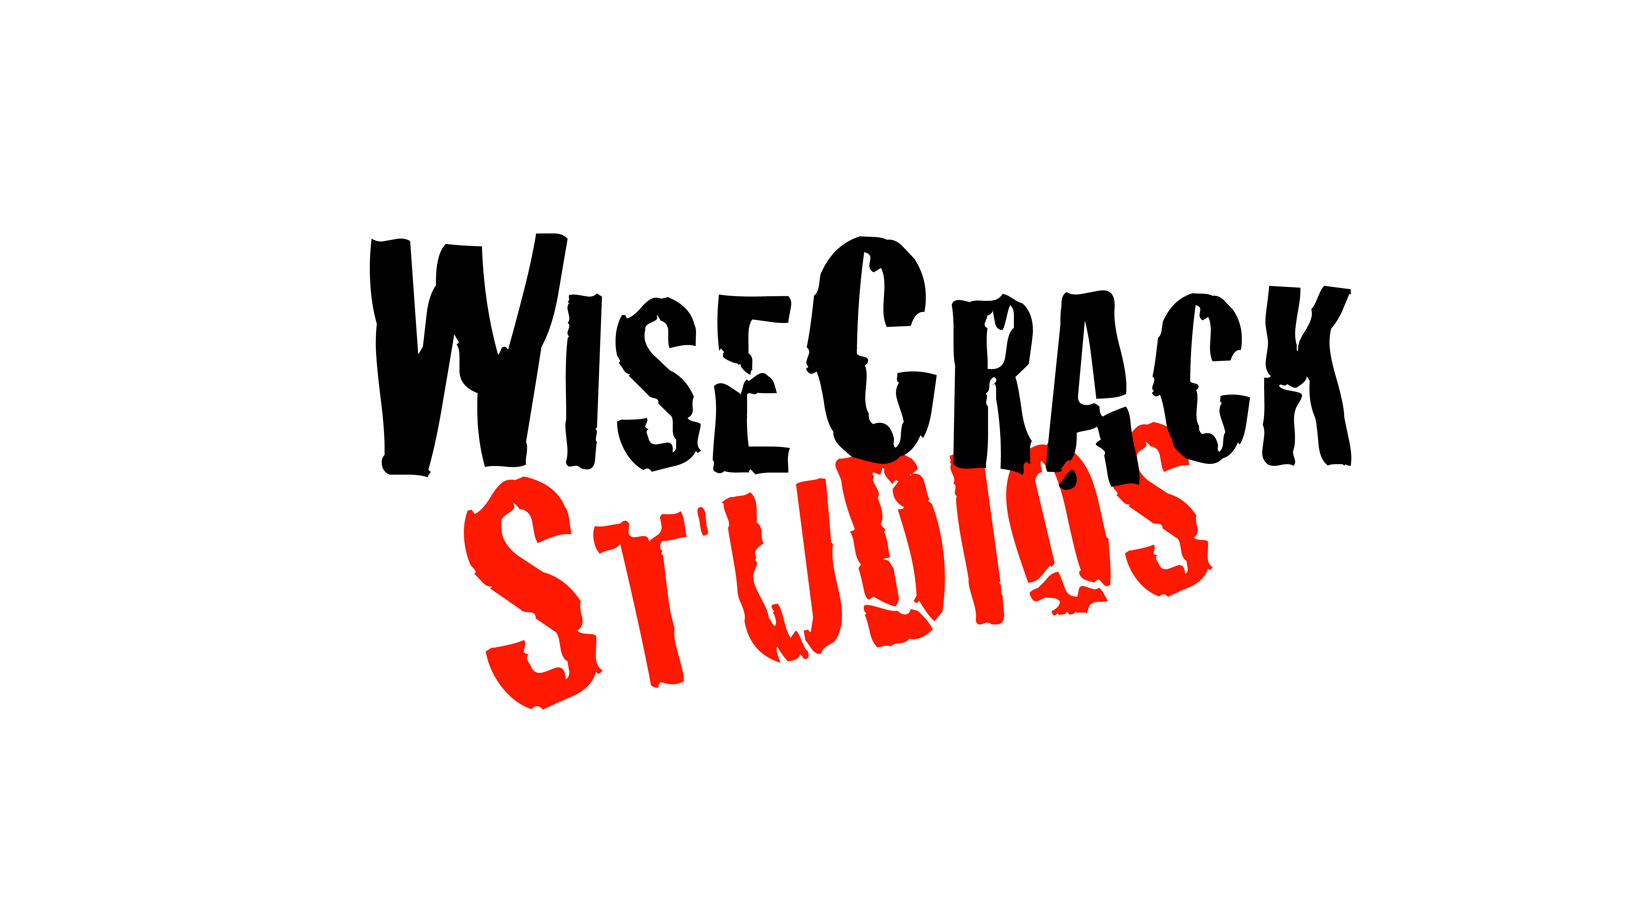 WiseCrack Studios